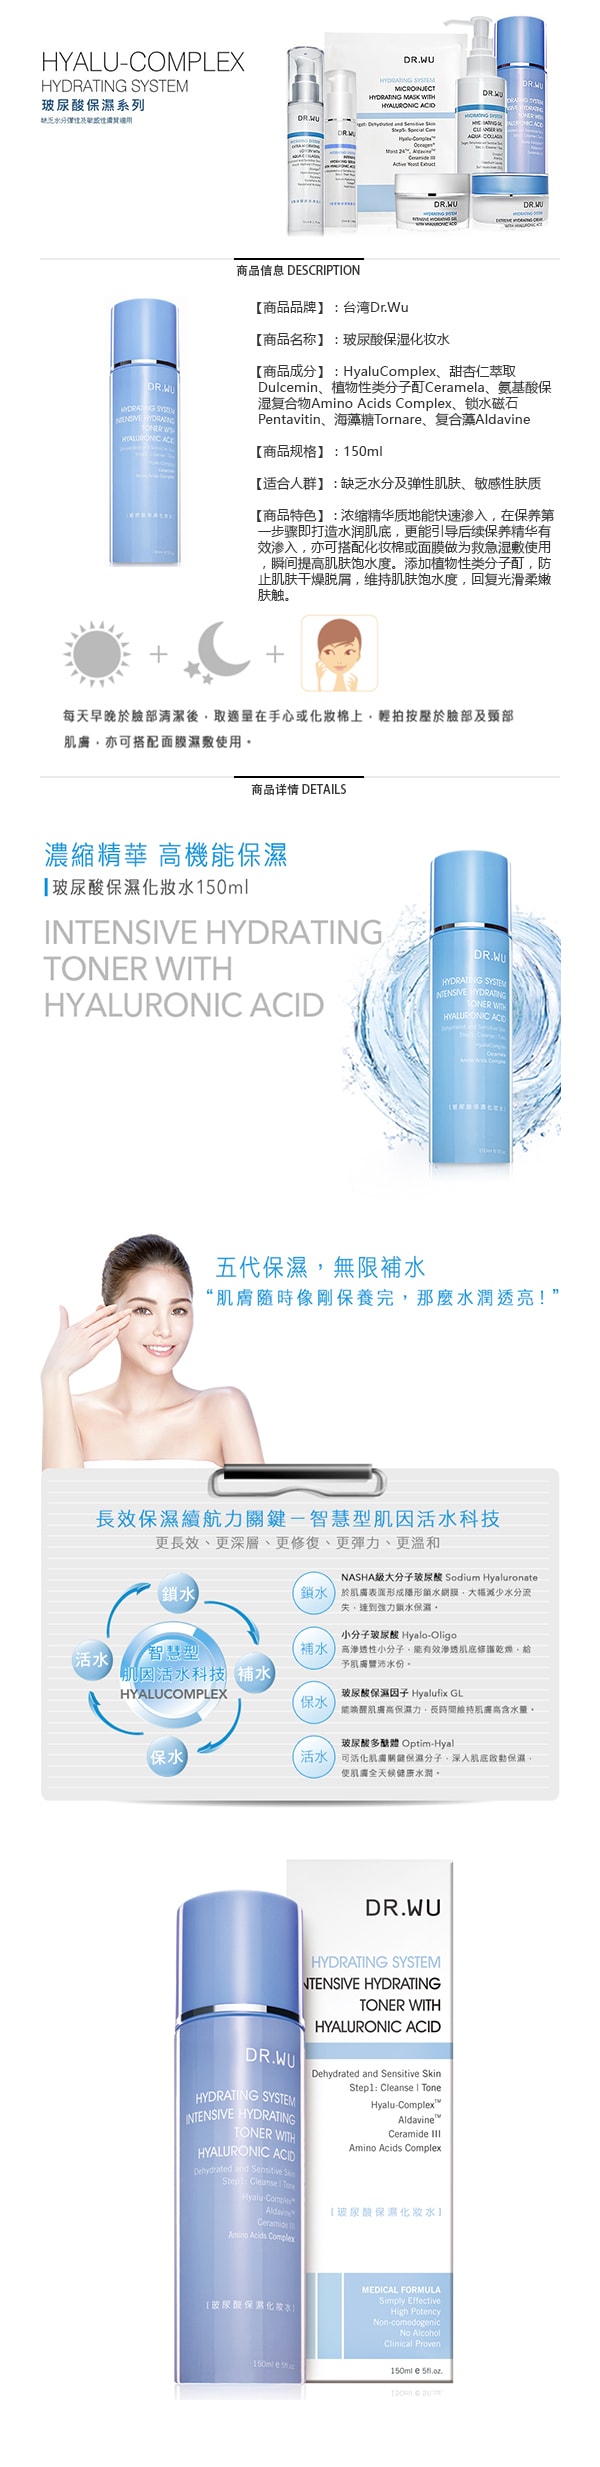 台湾DR.WU 保湿系列 玻尿酸保湿化妆水 150ml 昆凌代言